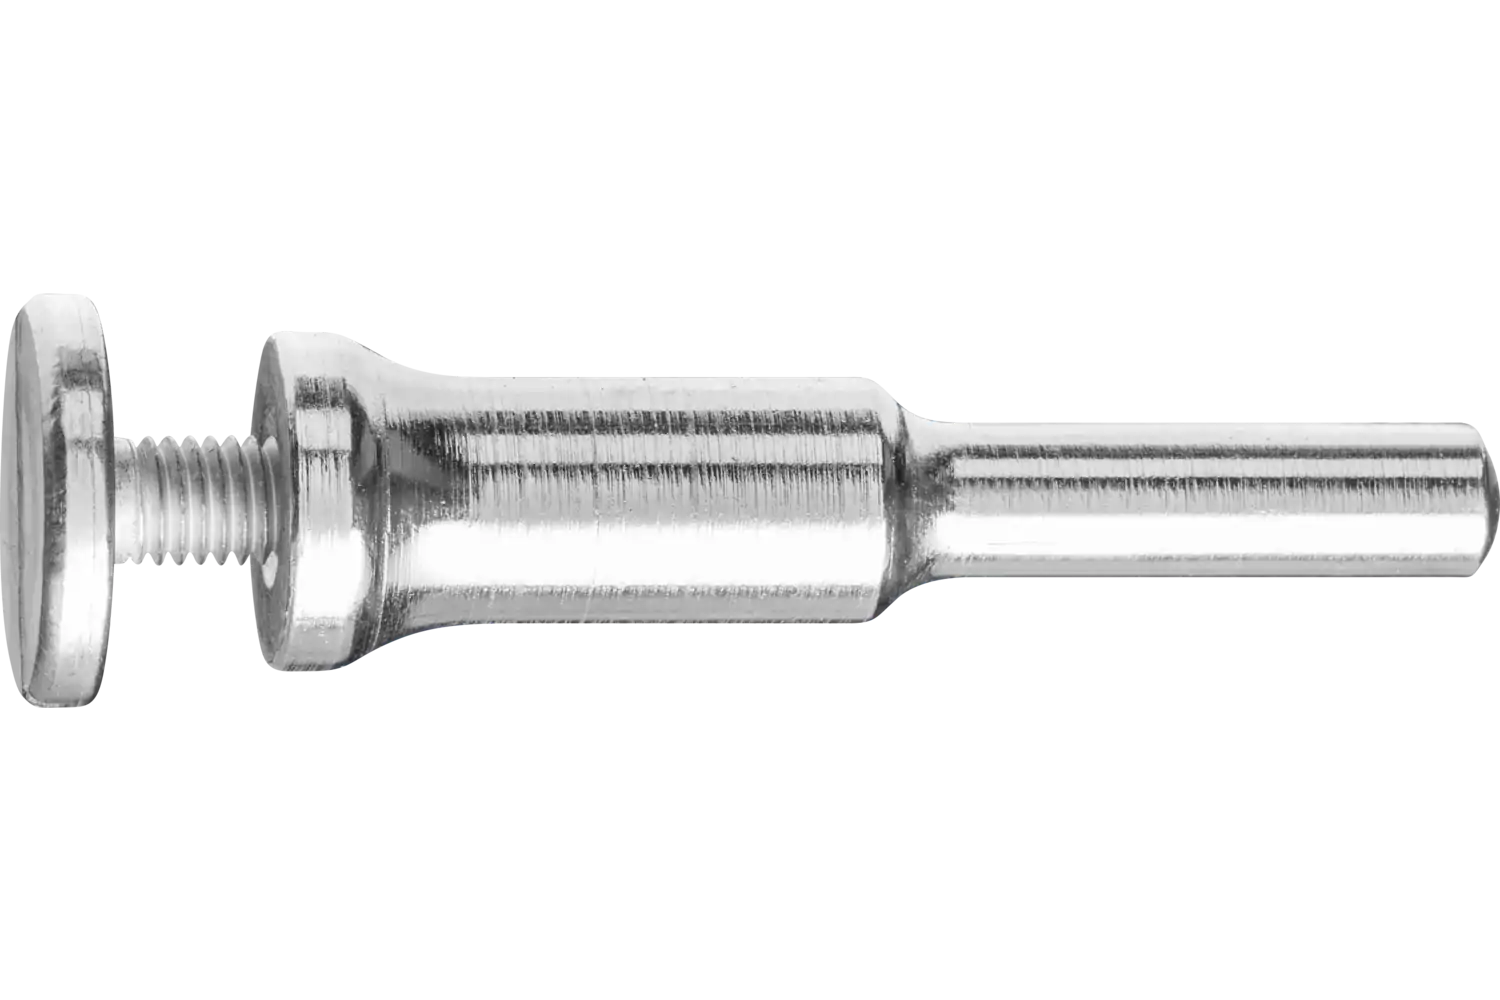 Werkzeughalter für Schleifwerkzeuge mit Bohrungs-Ø 5 mm Spannbereich 0-10mm Schaft-Ø 6 mm 1